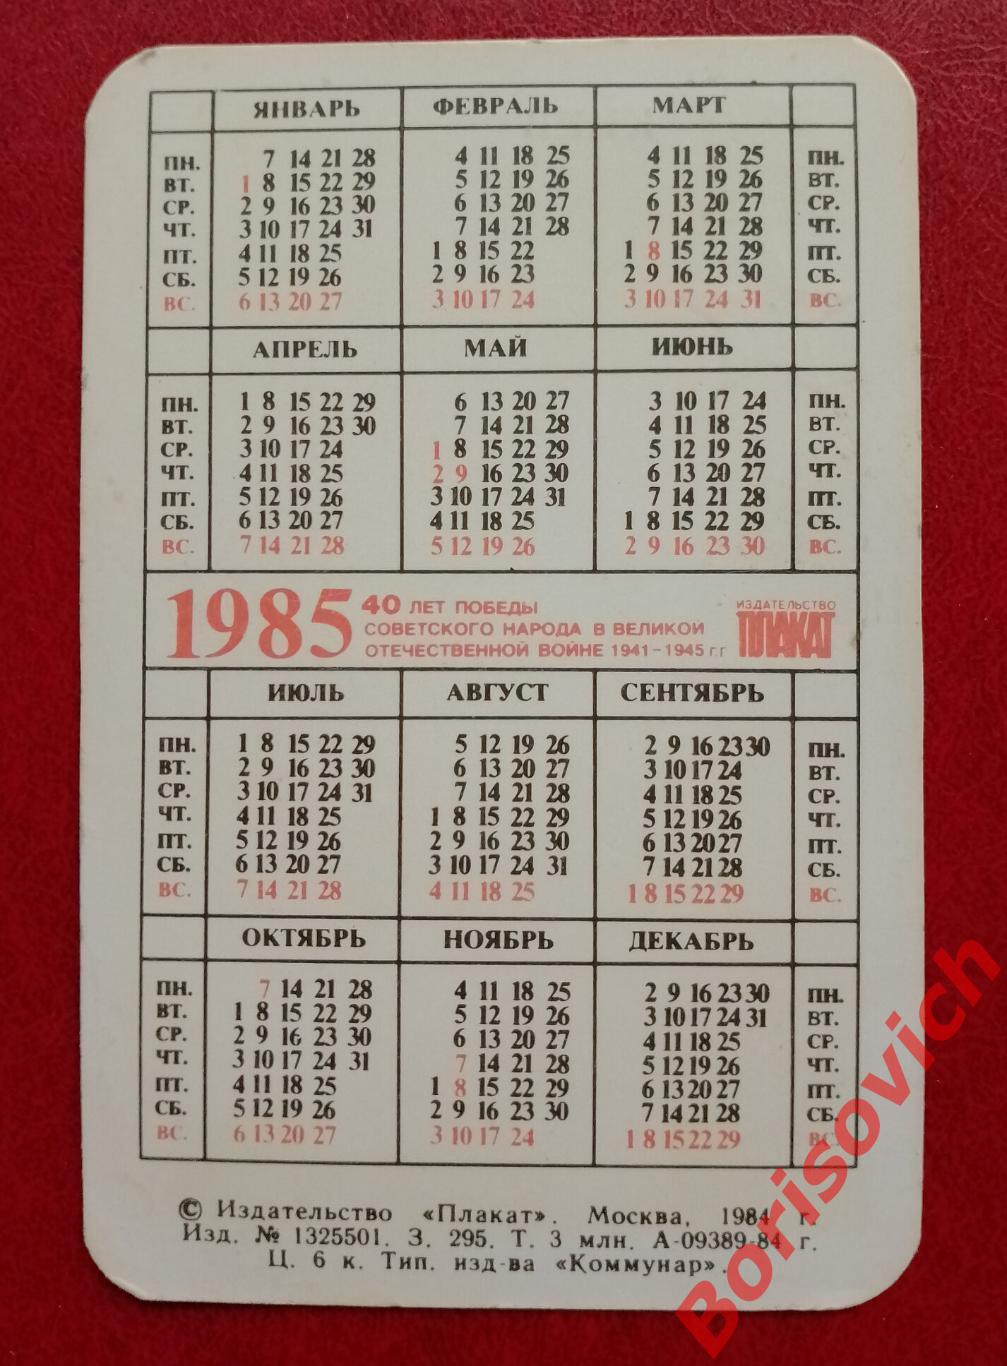 Календарик Киев - город - Герой 1985 г 40 лет Победы Русского народа в ВОВ 1